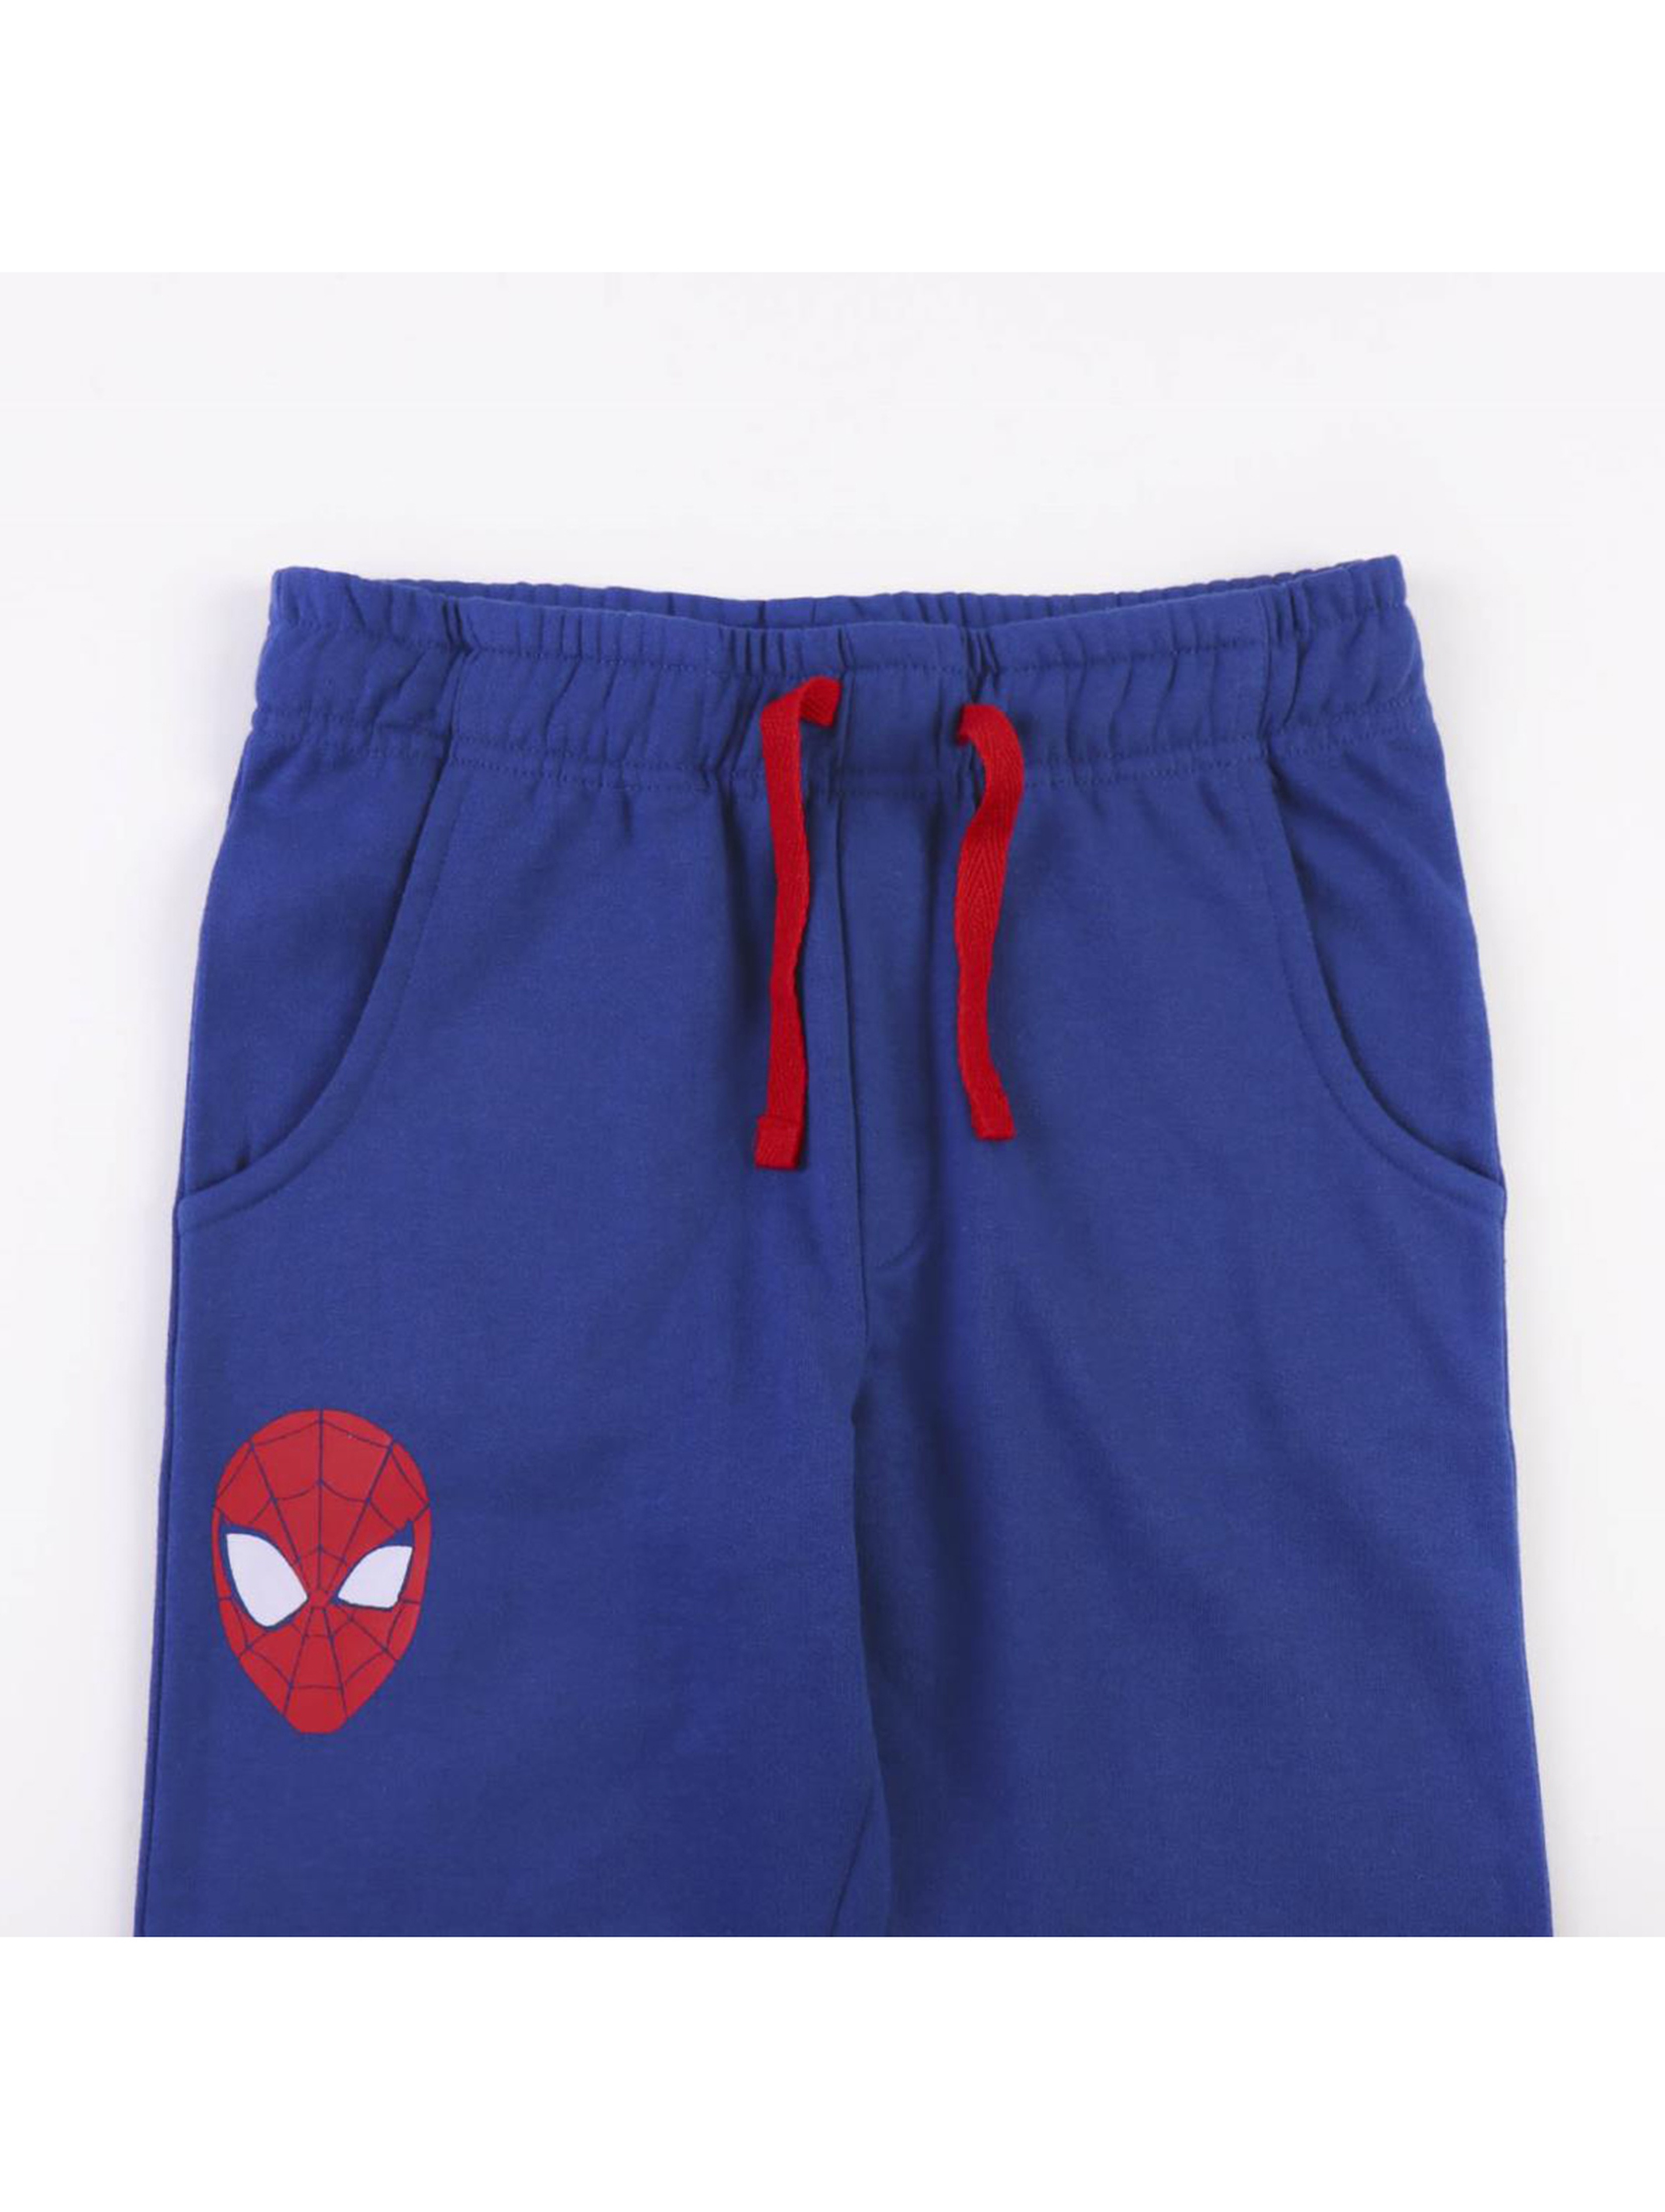 Chłopięcy komplet dresowy 3 częściowy - Spiderman